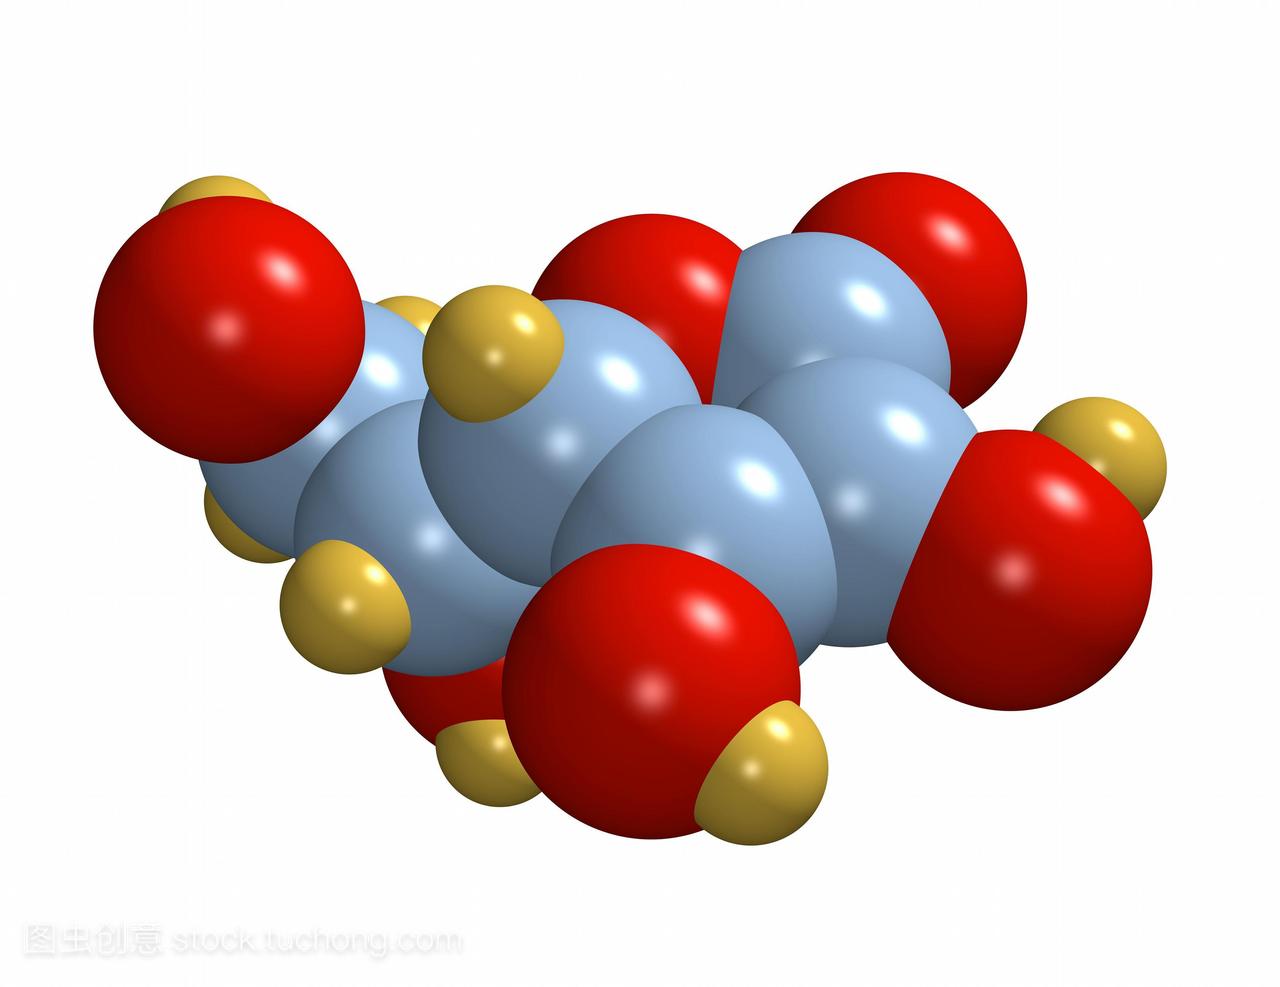 维生素c一种抗坏血酸维生素c分子的计算机模型